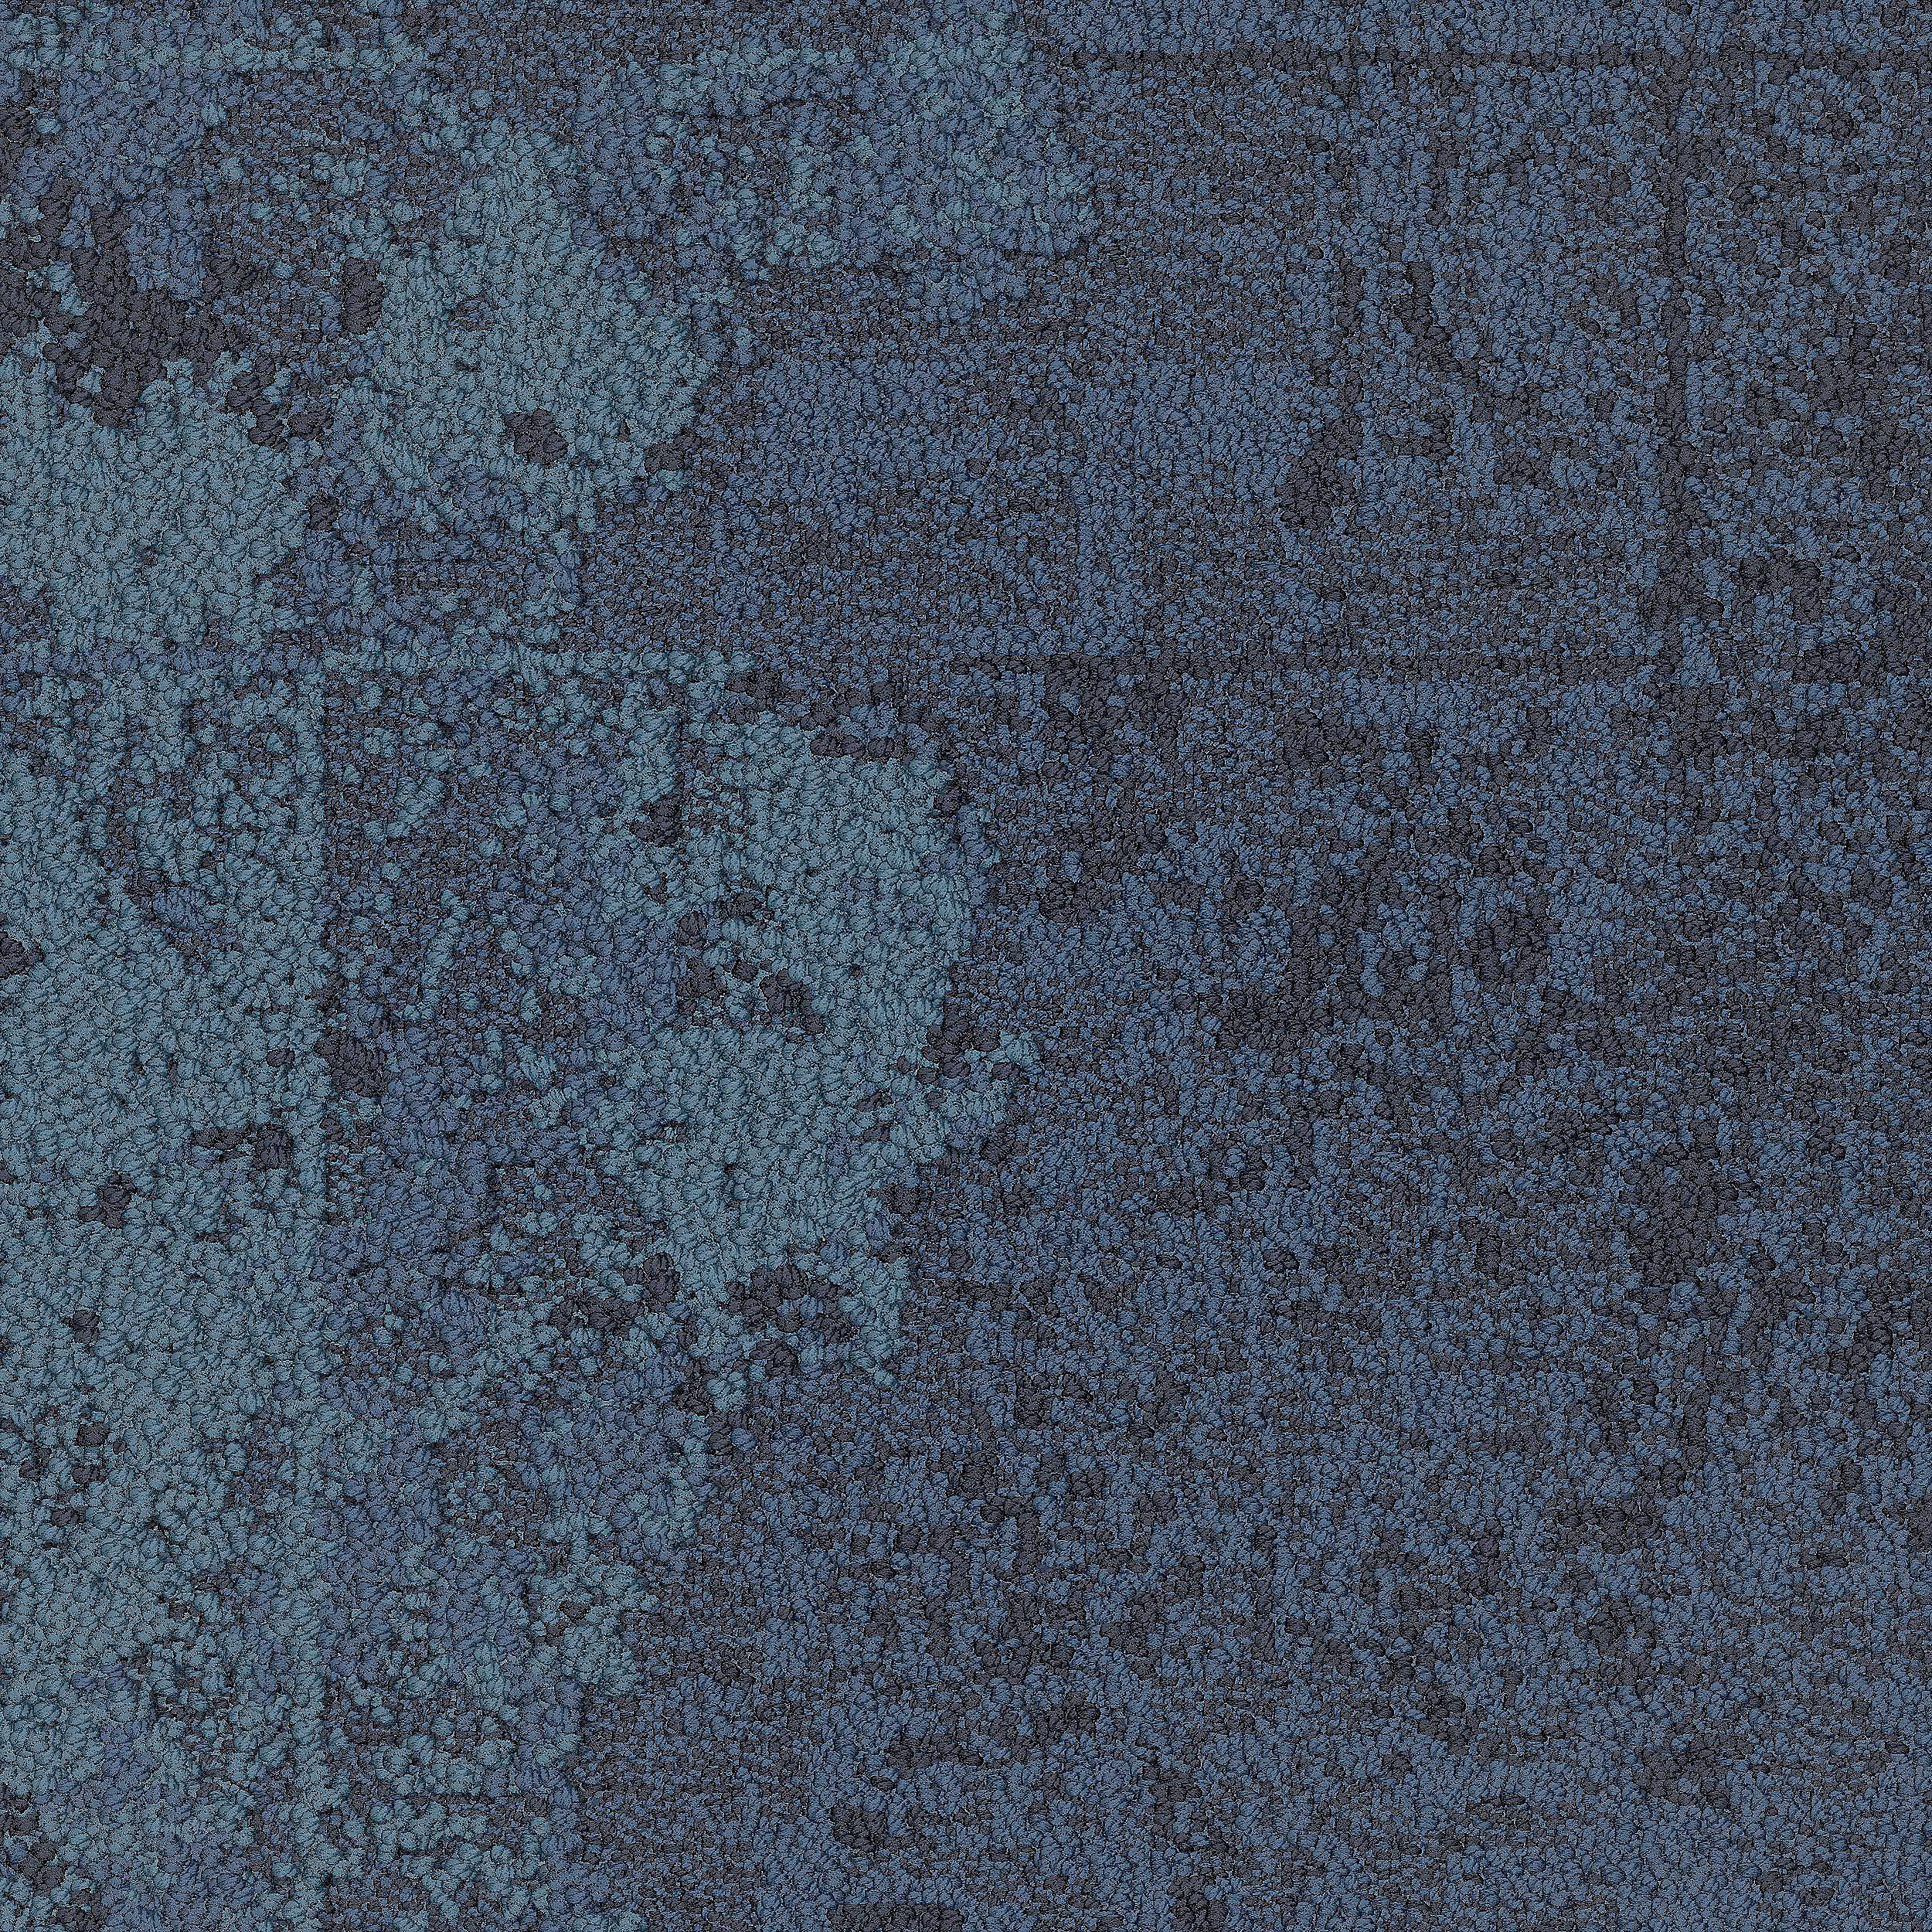 B602 Carpet Tile In Pacific número de imagen 7